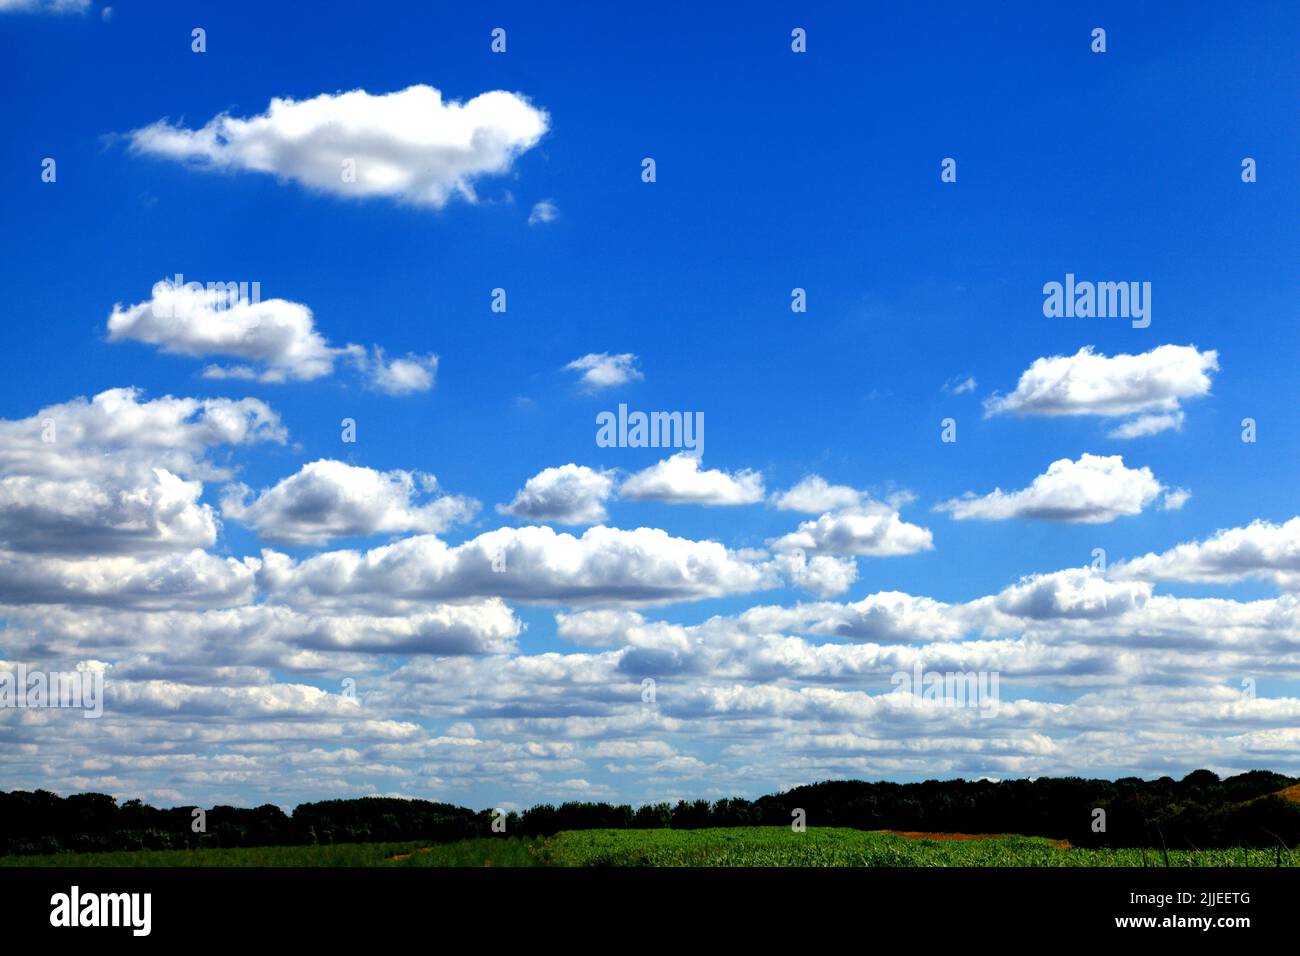 Nubes blancas, cúmulos, cielo azul, nube, cielos, Bosque, árboles en el fondo Inglaterra, Reino Unido Foto de stock